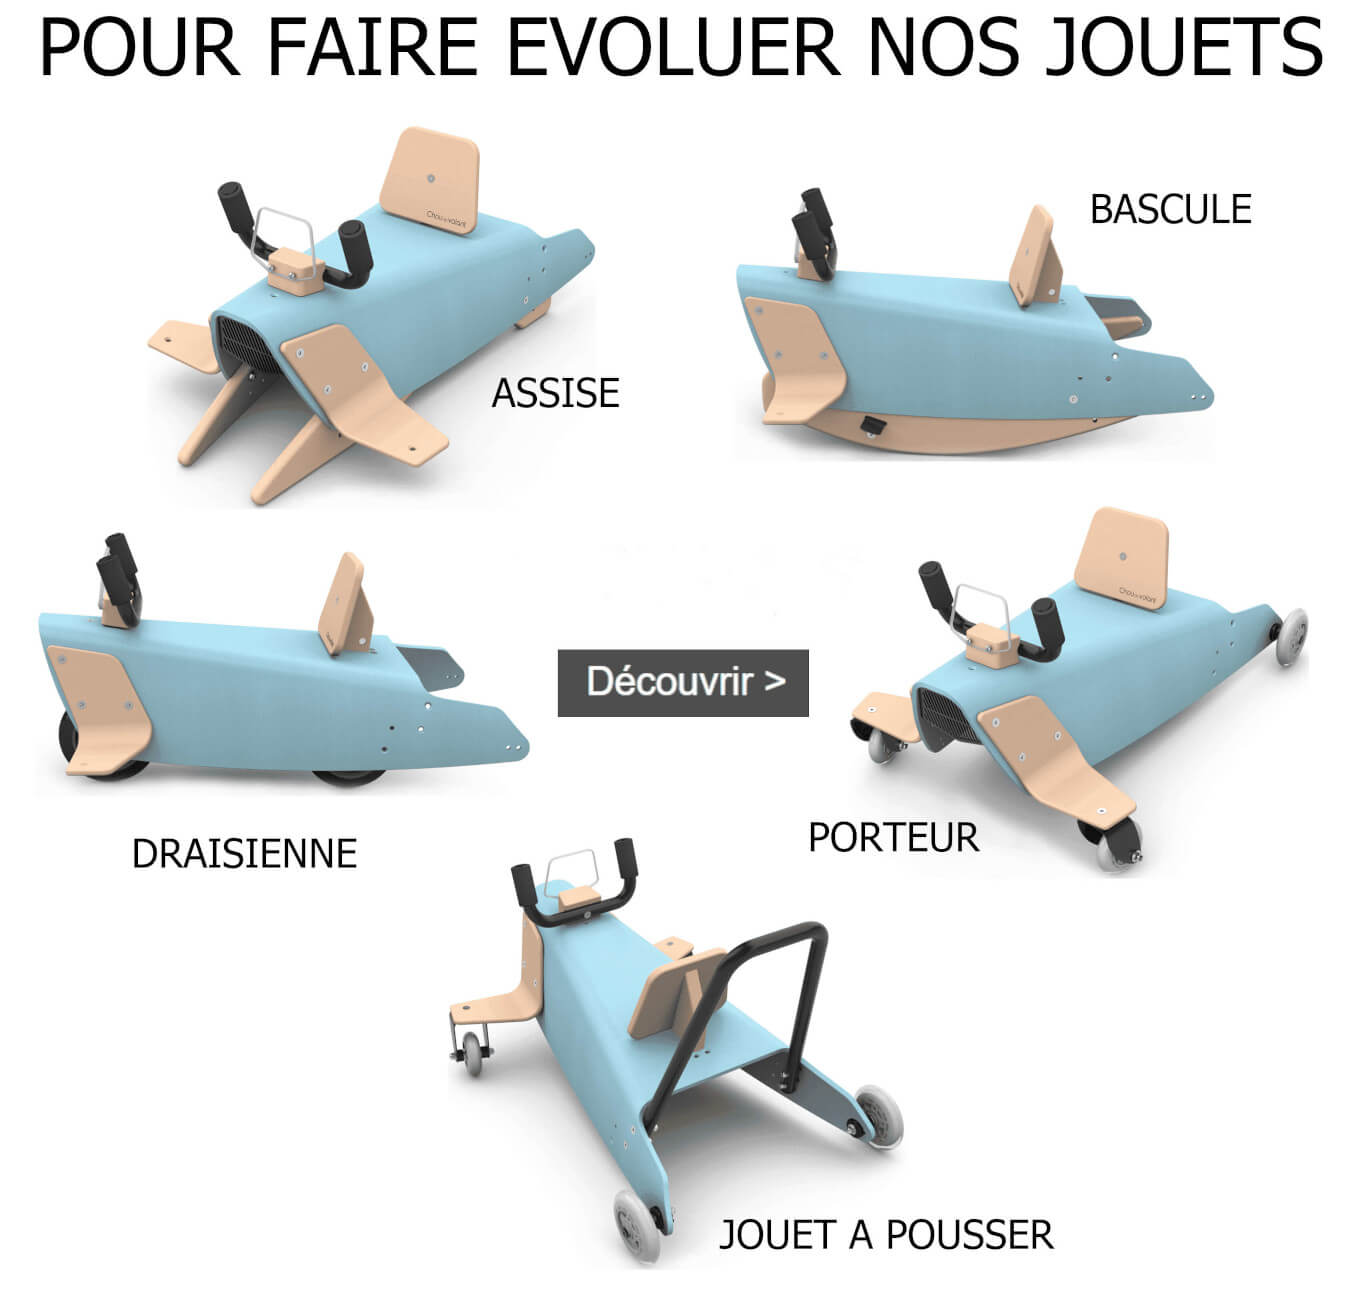 Pièces détachées pour bascules porteurs draisiennes made in France